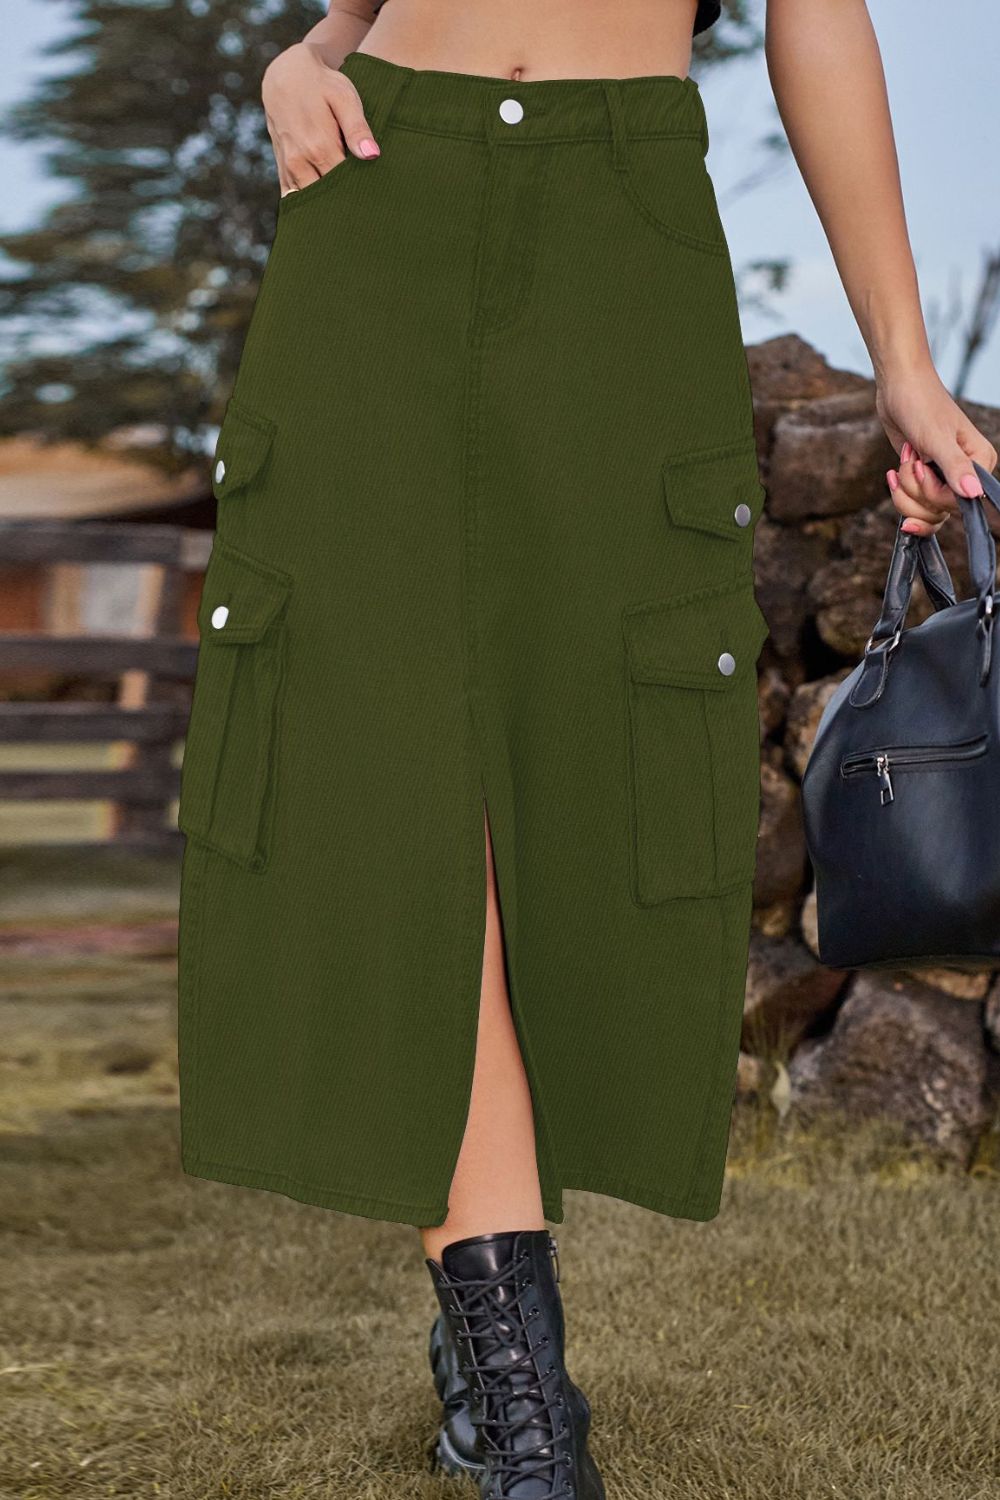 Slit Front Midi Denim Skirt with Pockets - TiffanyzKlozet